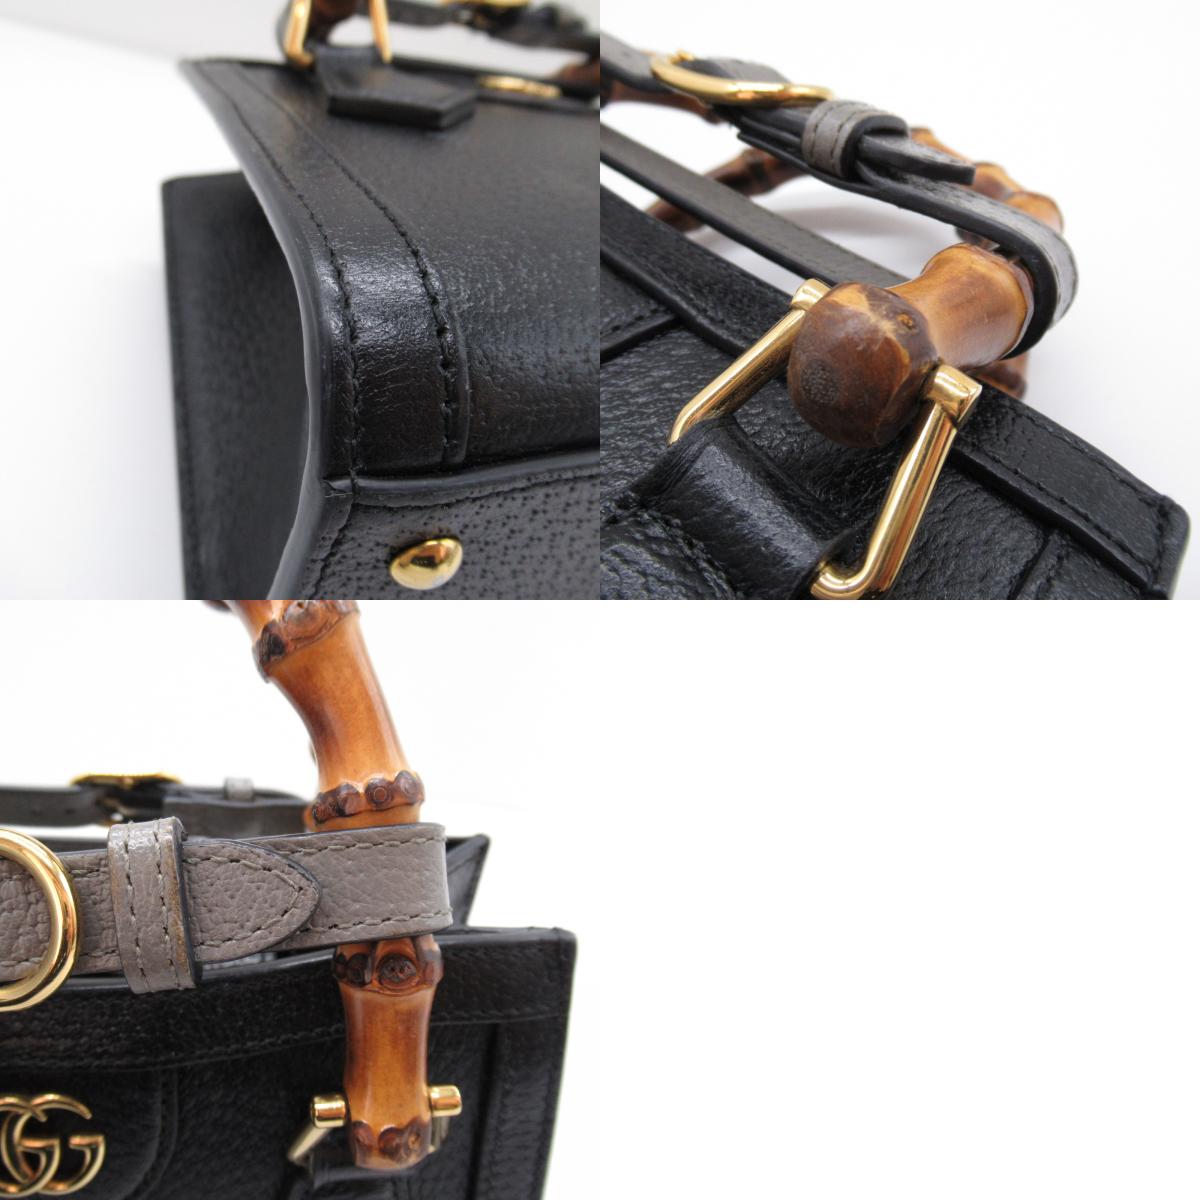 Gucci Diana 2w Shoulder Bag 2way Shoulder Bag Leather  Black 702782